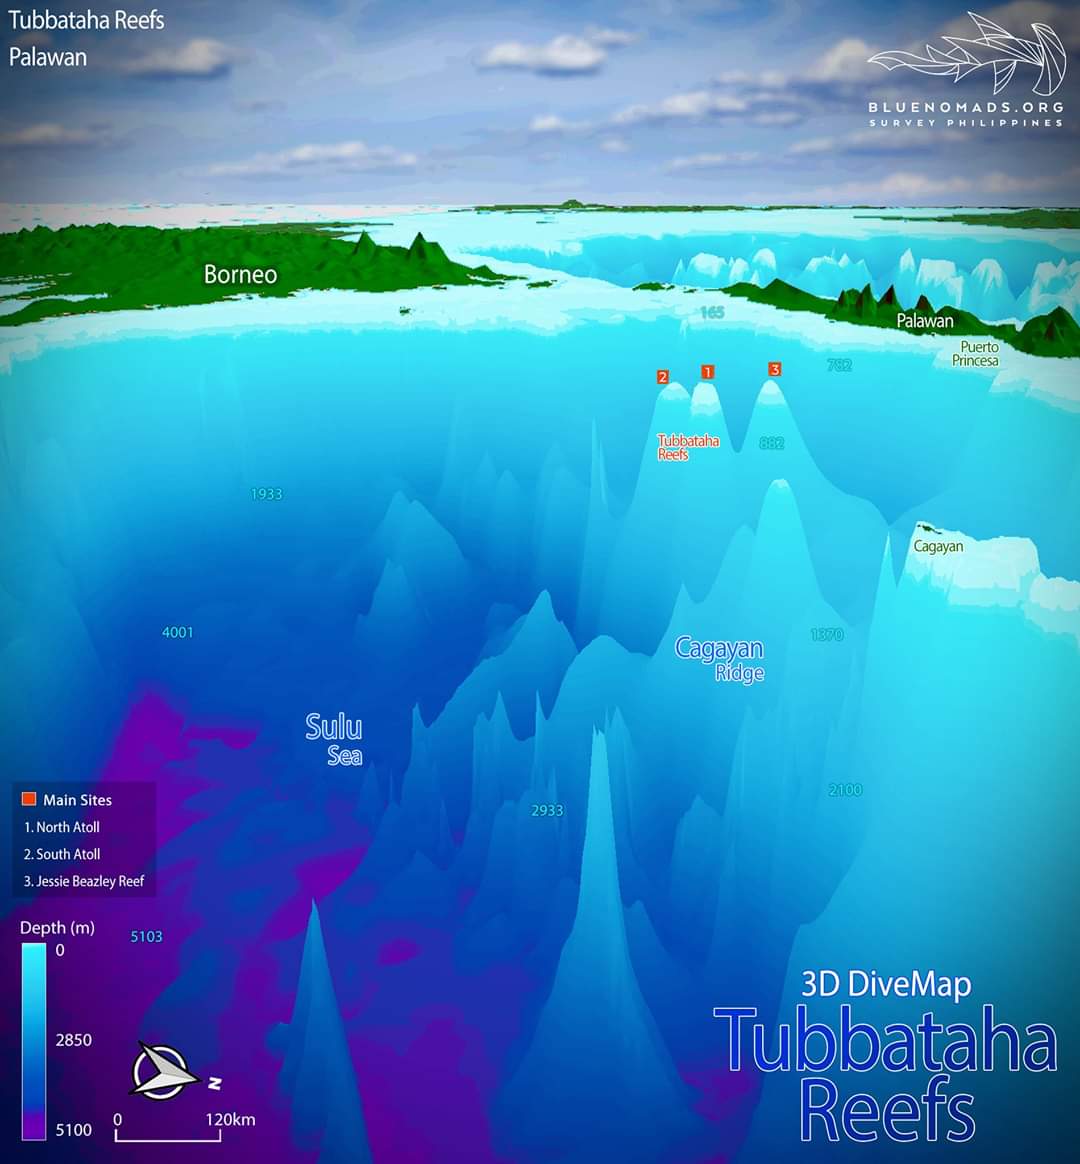 Tubbataha reefs Underwater map